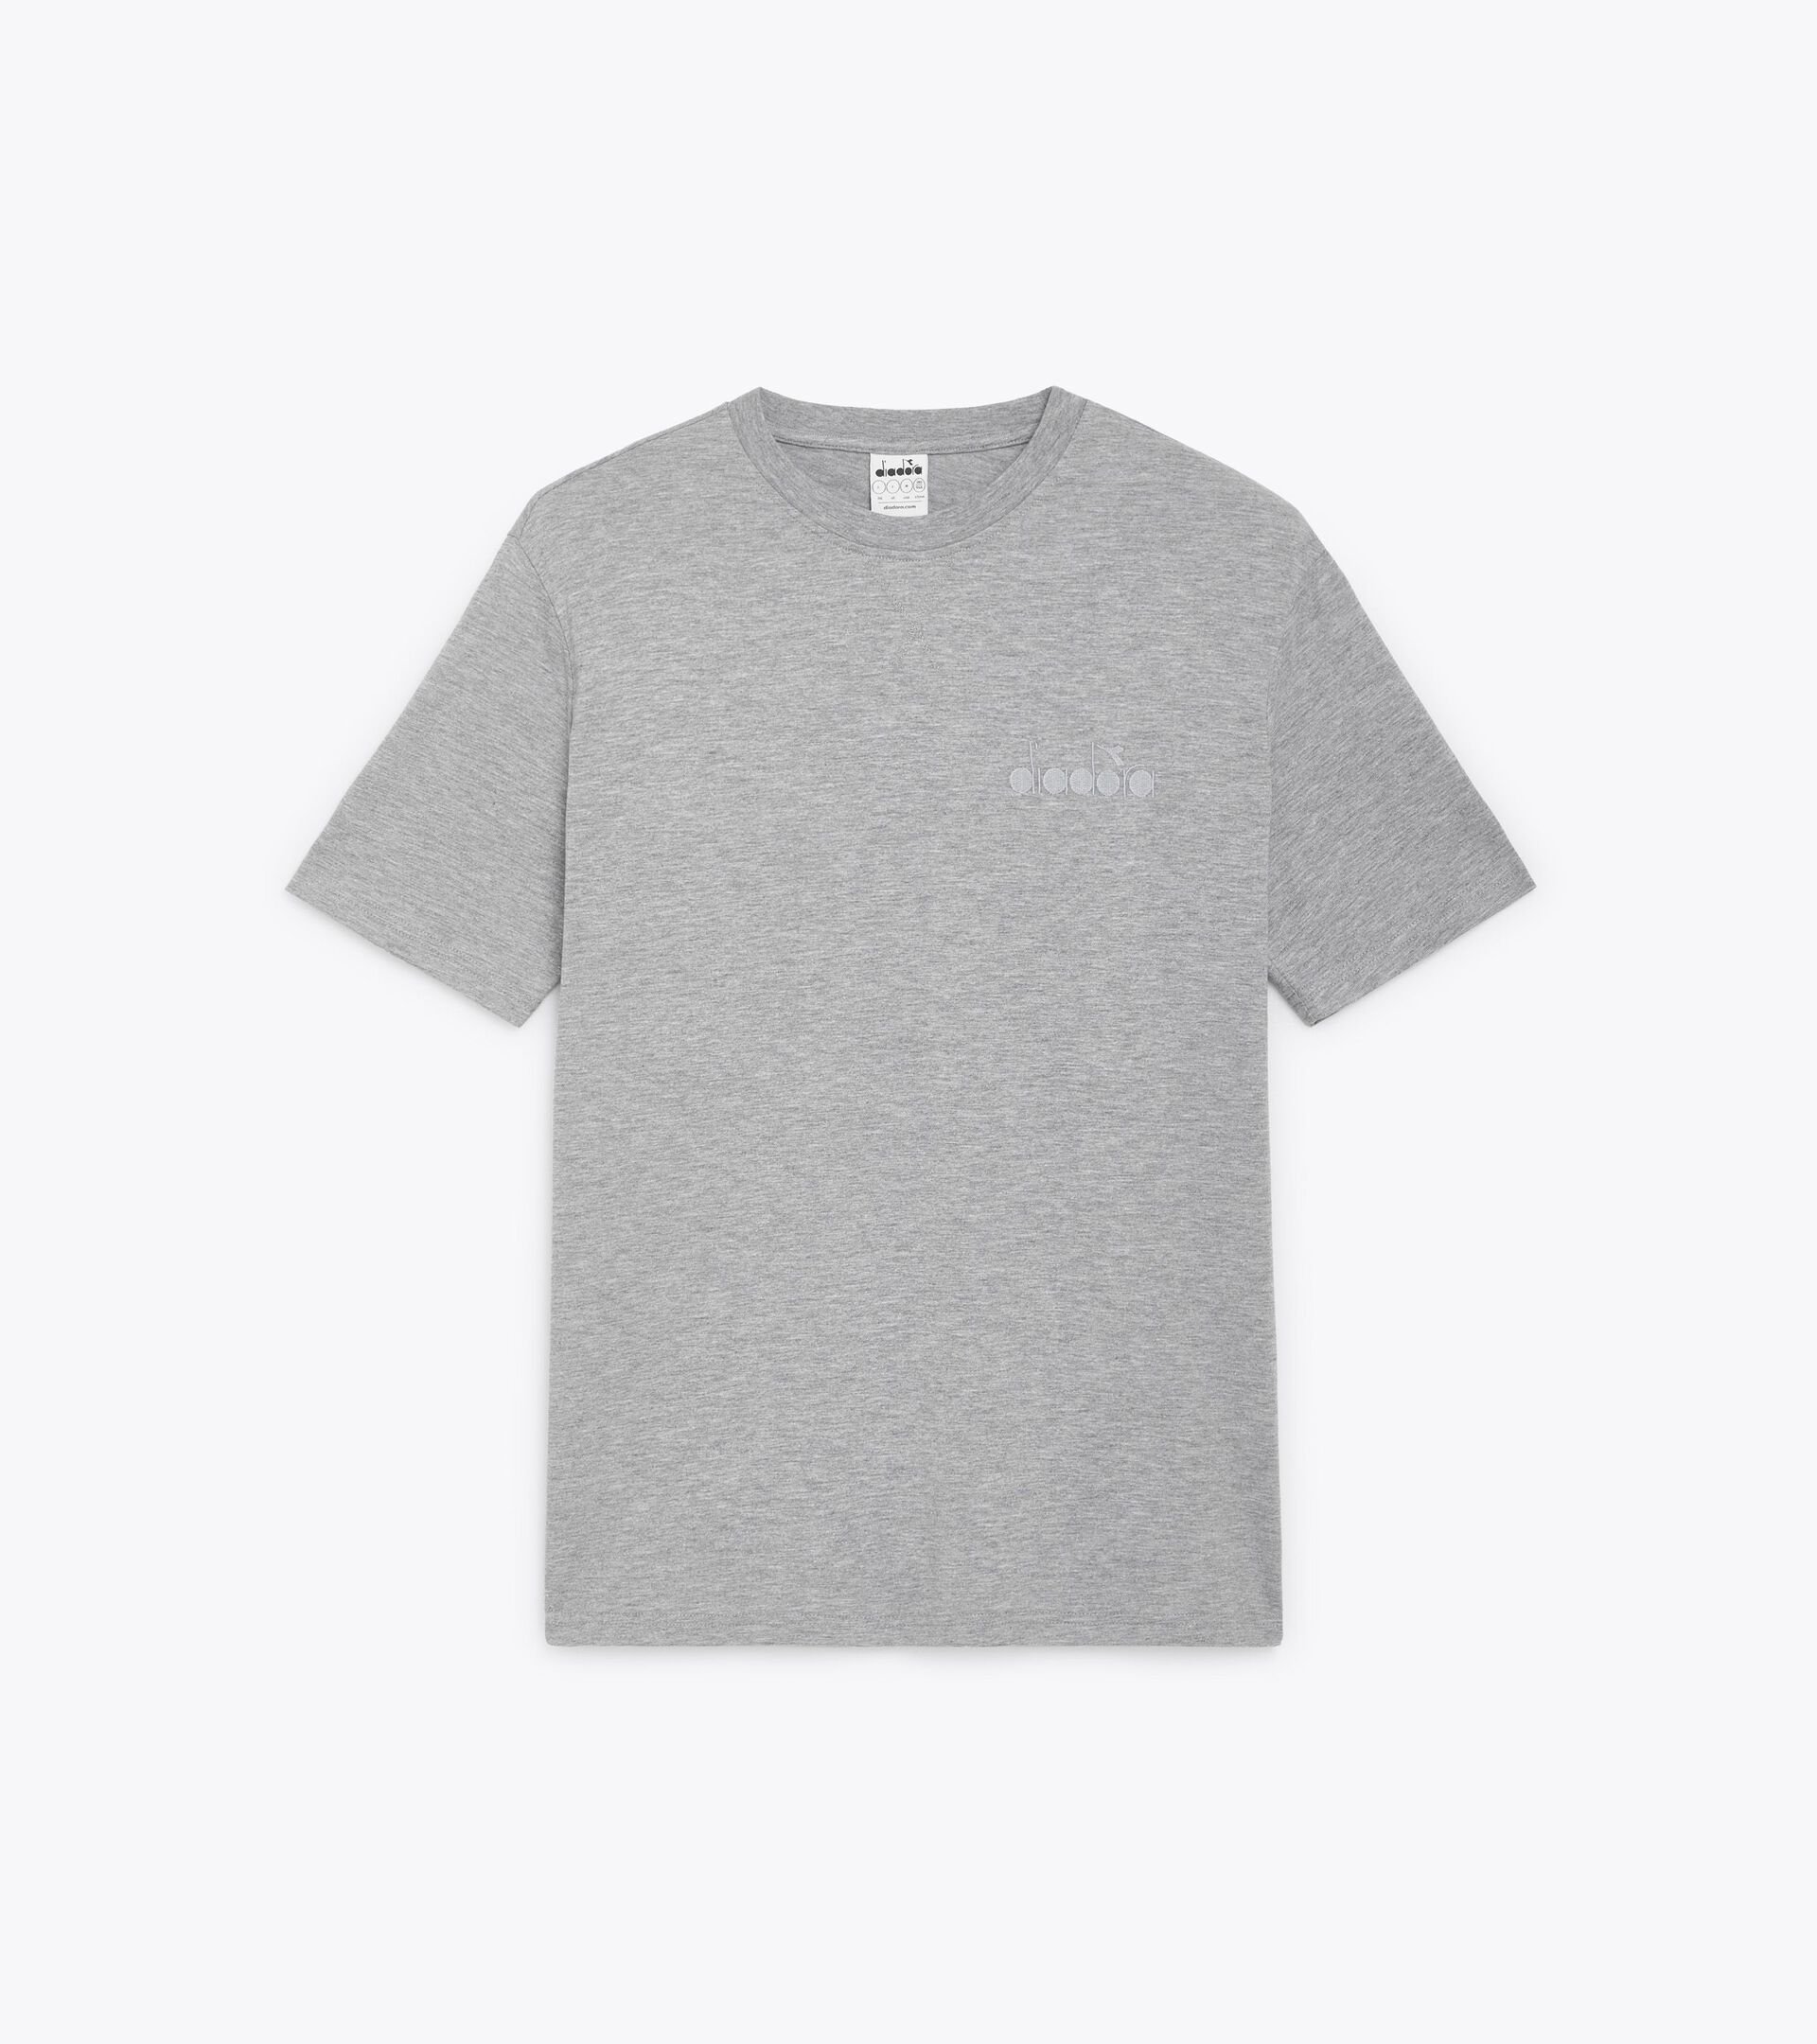 T-shirt - Gender Neutral T-SHIRT SS ATHL. LOGO HIGH RISE MELANGE - Diadora